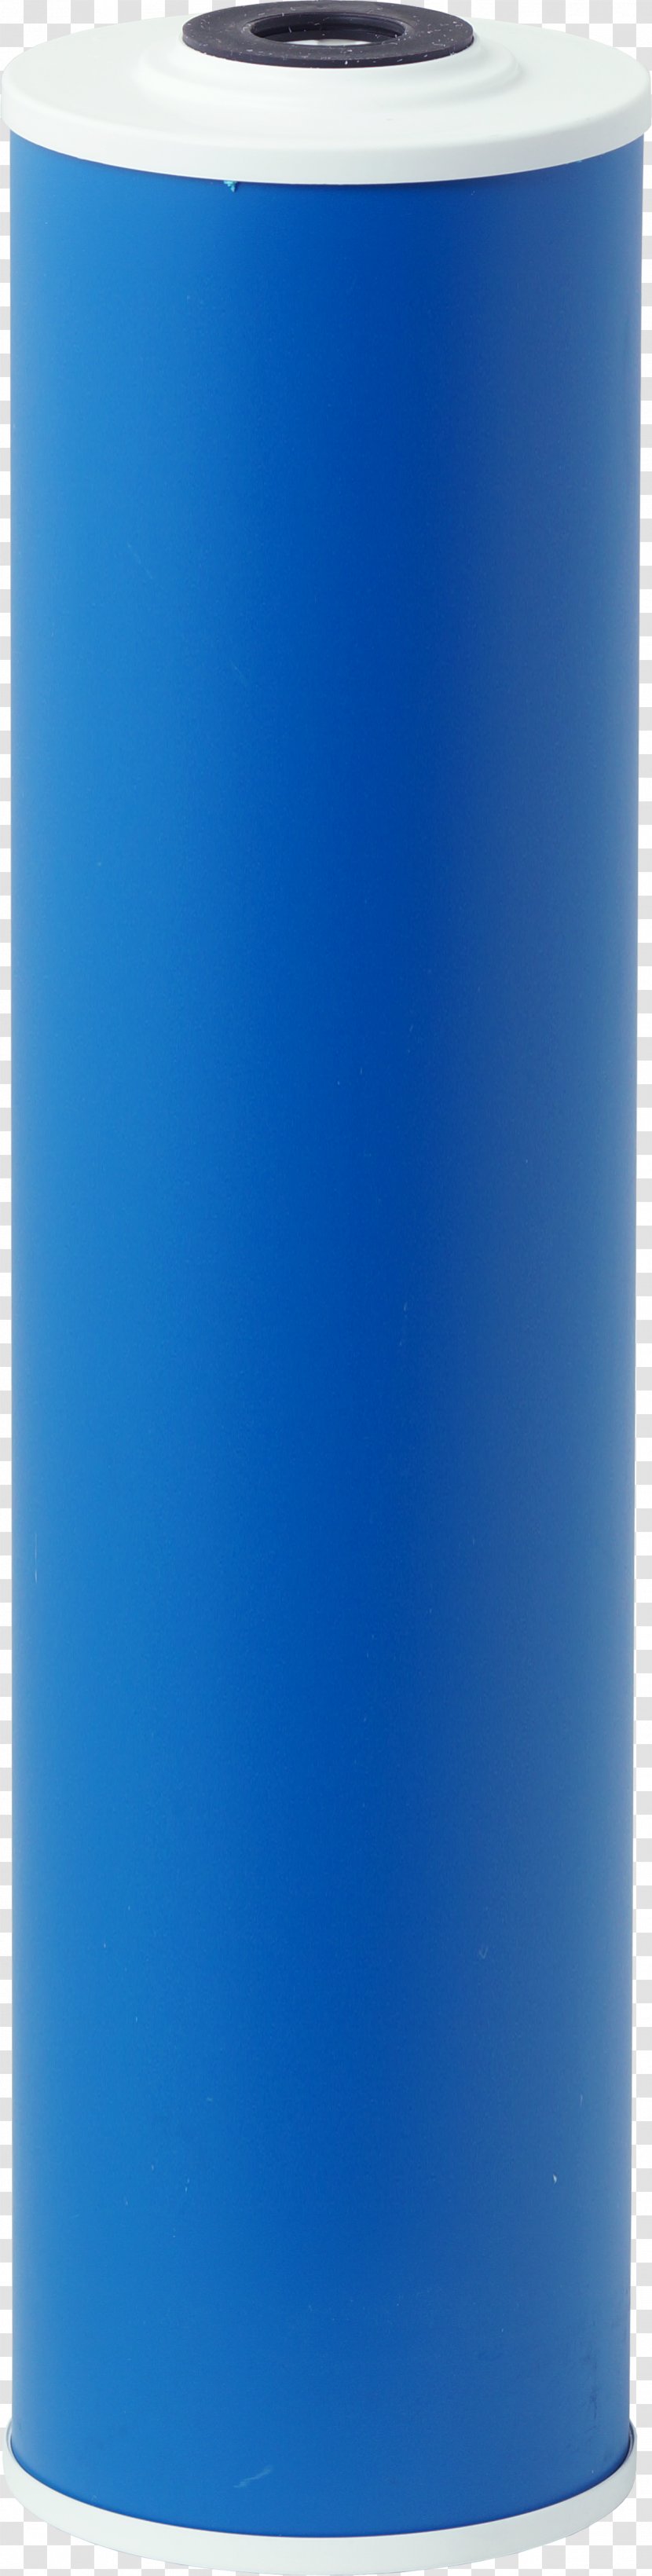 Water Filter Cobalt Blue - Drinking - Design Transparent PNG